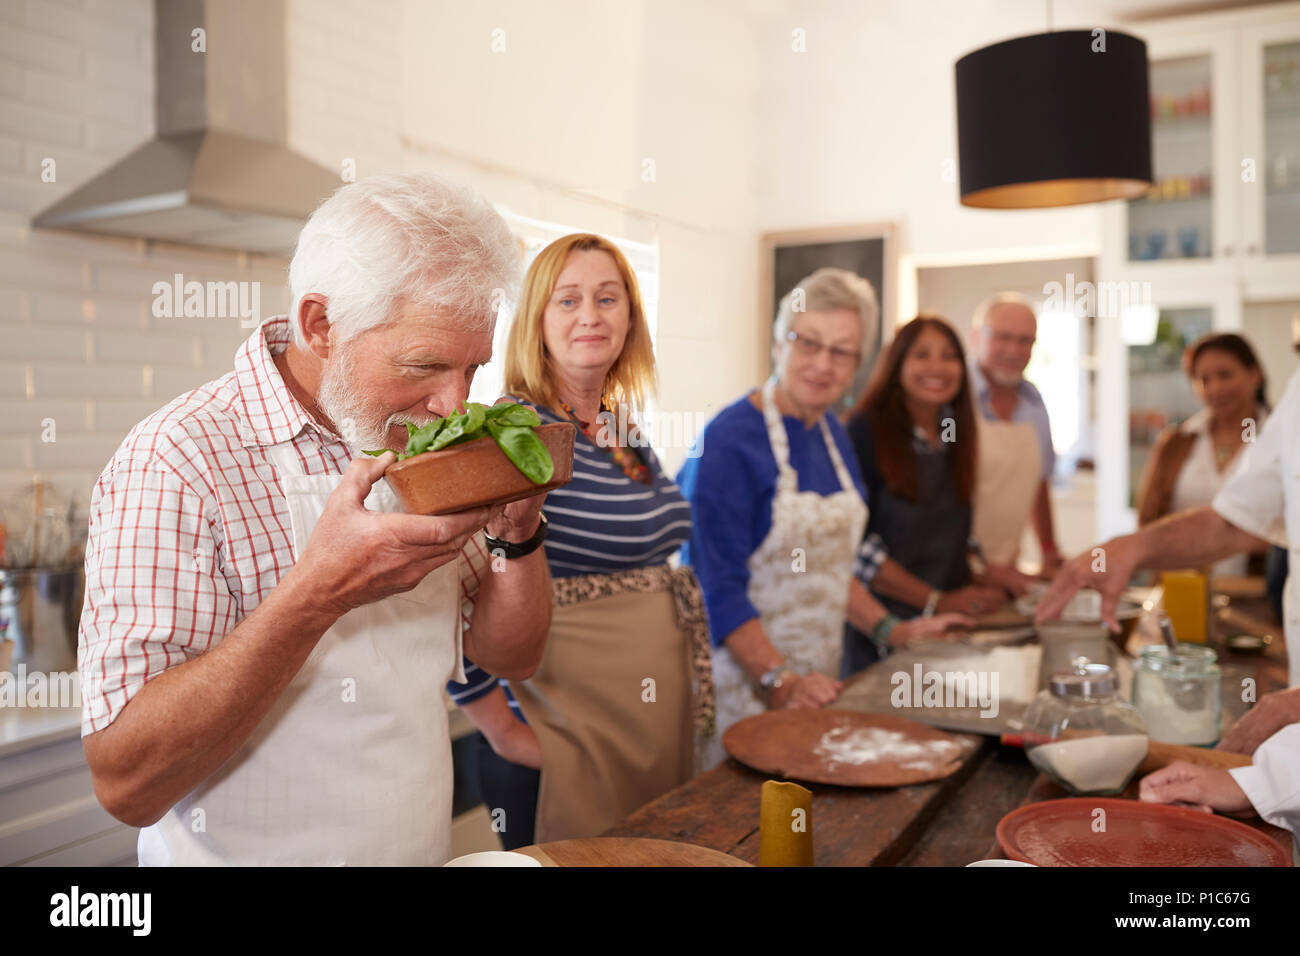 Active senior amici prendendo lezioni di cucina, profumo di basilico fresco Foto Stock